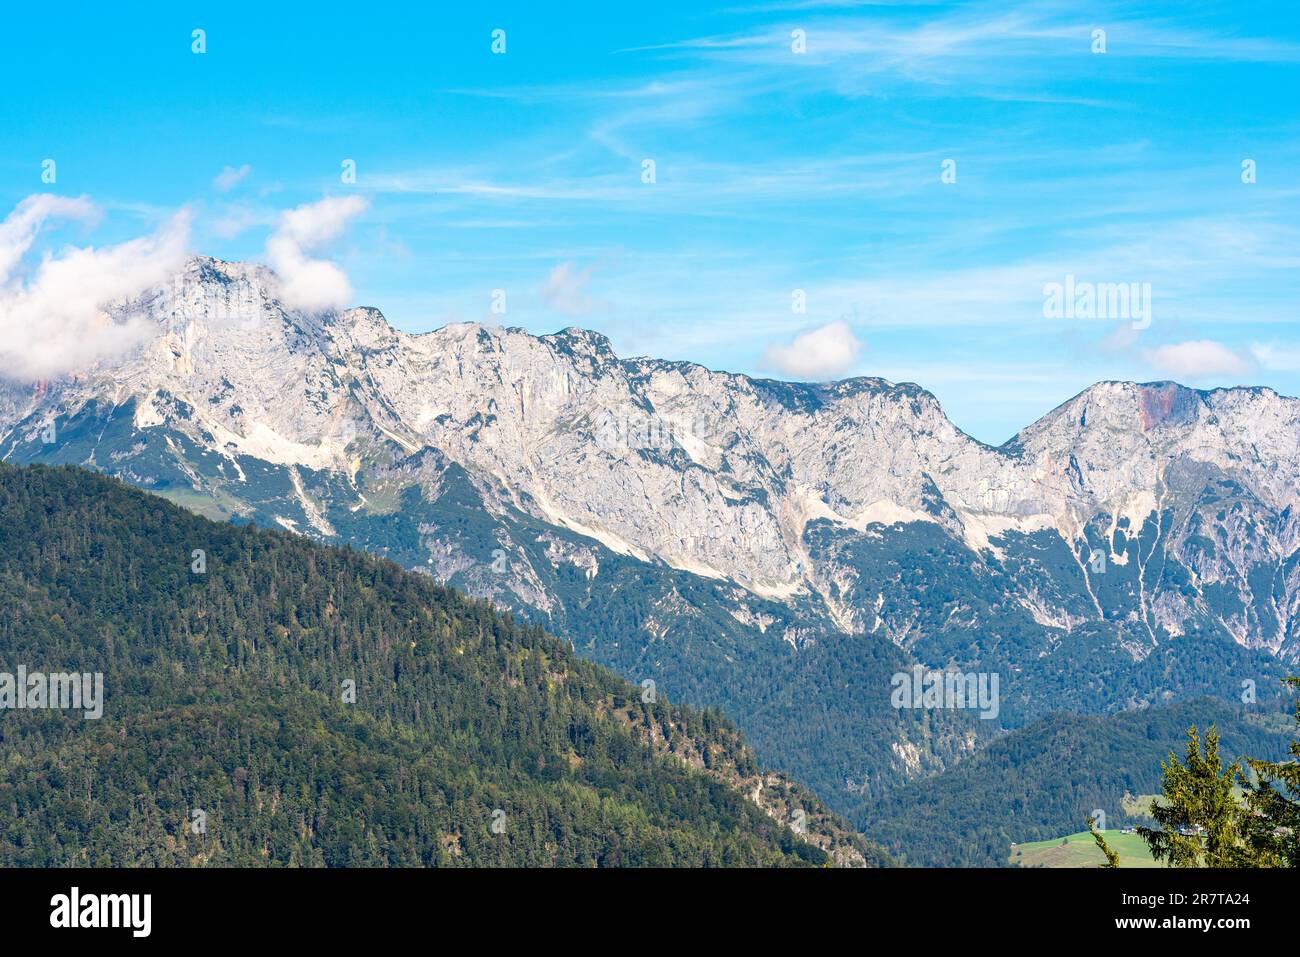 Panoramablick auf die Berchtesgaden-Alpen mit dem Berchtesgaden-Hochthron als dem höchsten Gipfel des Untersberger Massivs in den nördlichen Kalksteinalpen Stockfoto